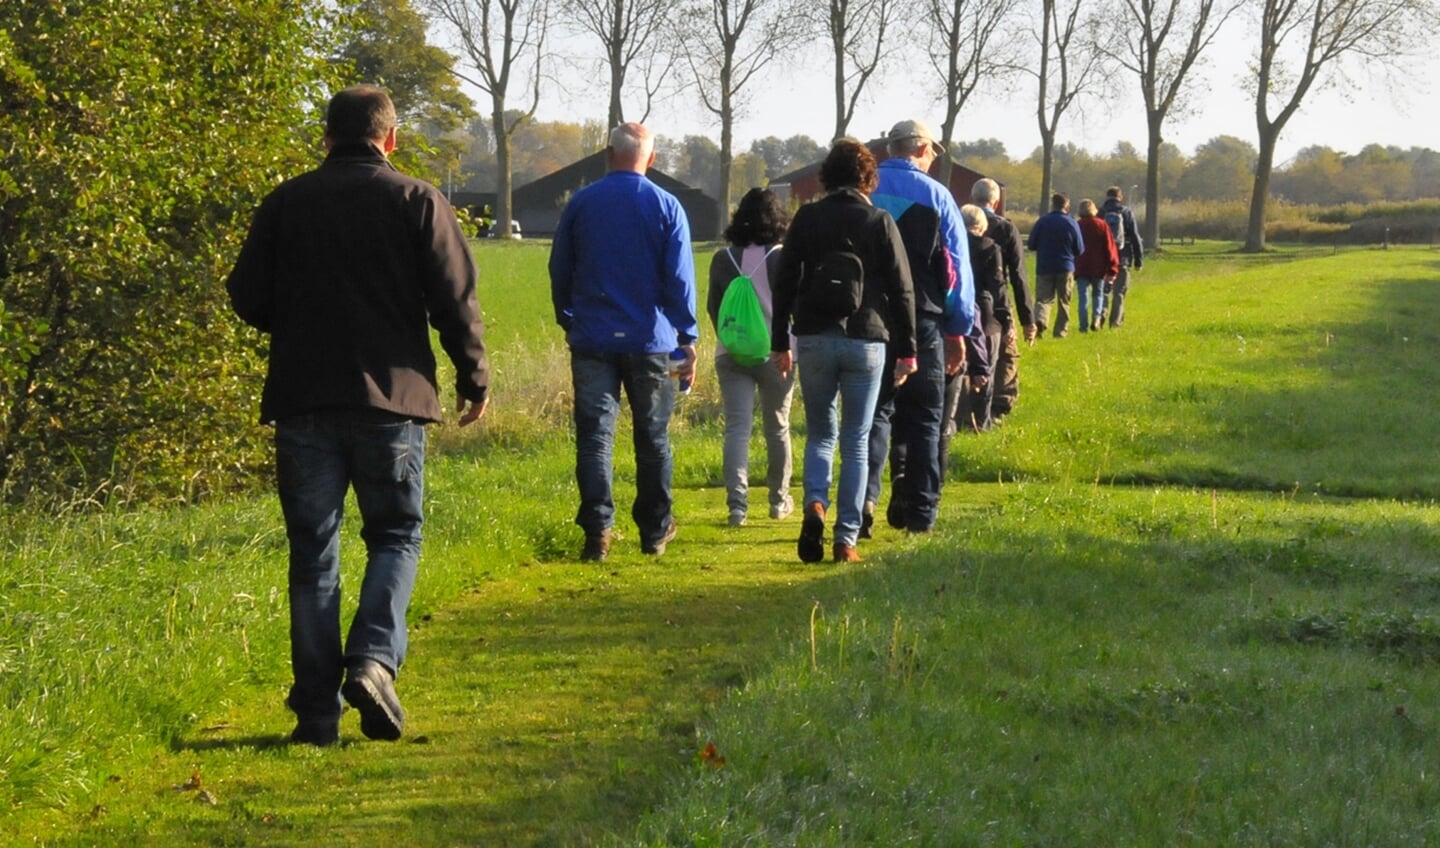 Om inwoners van Wageningen, met of zonder gezondheidsproblemen en elke leeftijd, te stimuleren op pad te gaan organiseert Sportservice Wageningen de Wageningse Wandeluitdaging. Tien weken wandelen in groepsverband vanaf 12 en 14 april